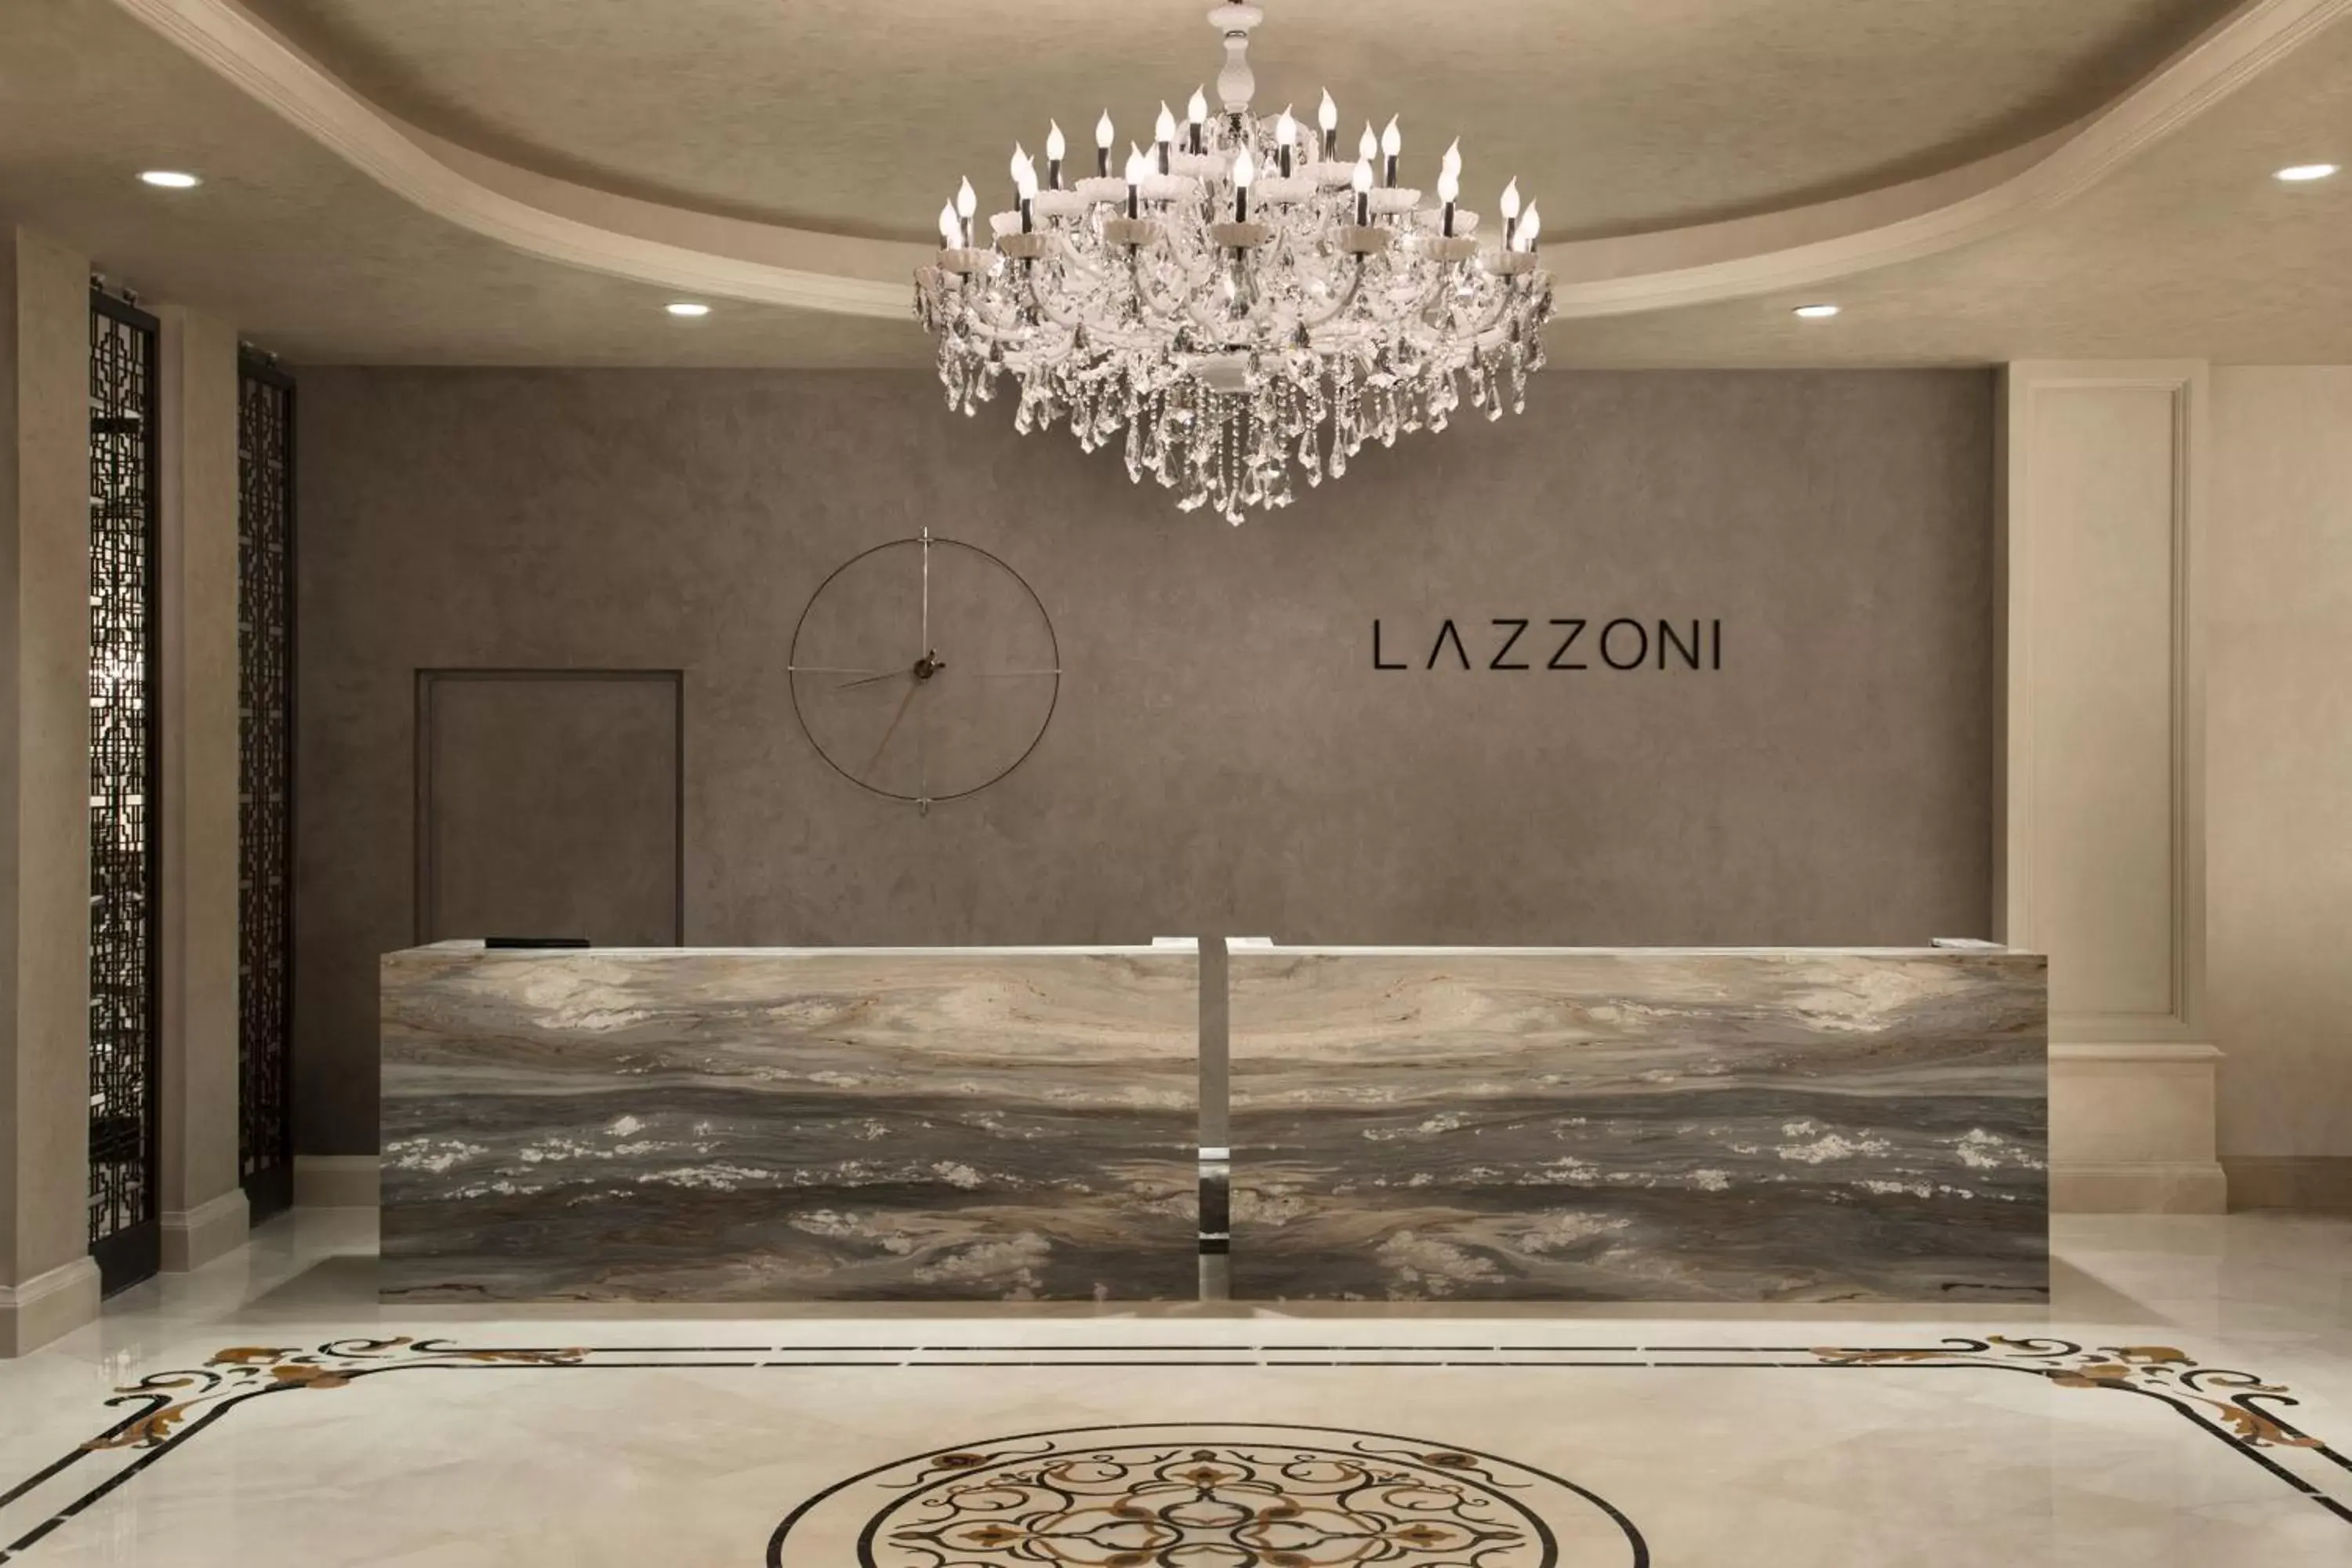 Lobby or reception, Bathroom in Lazzoni Hotel